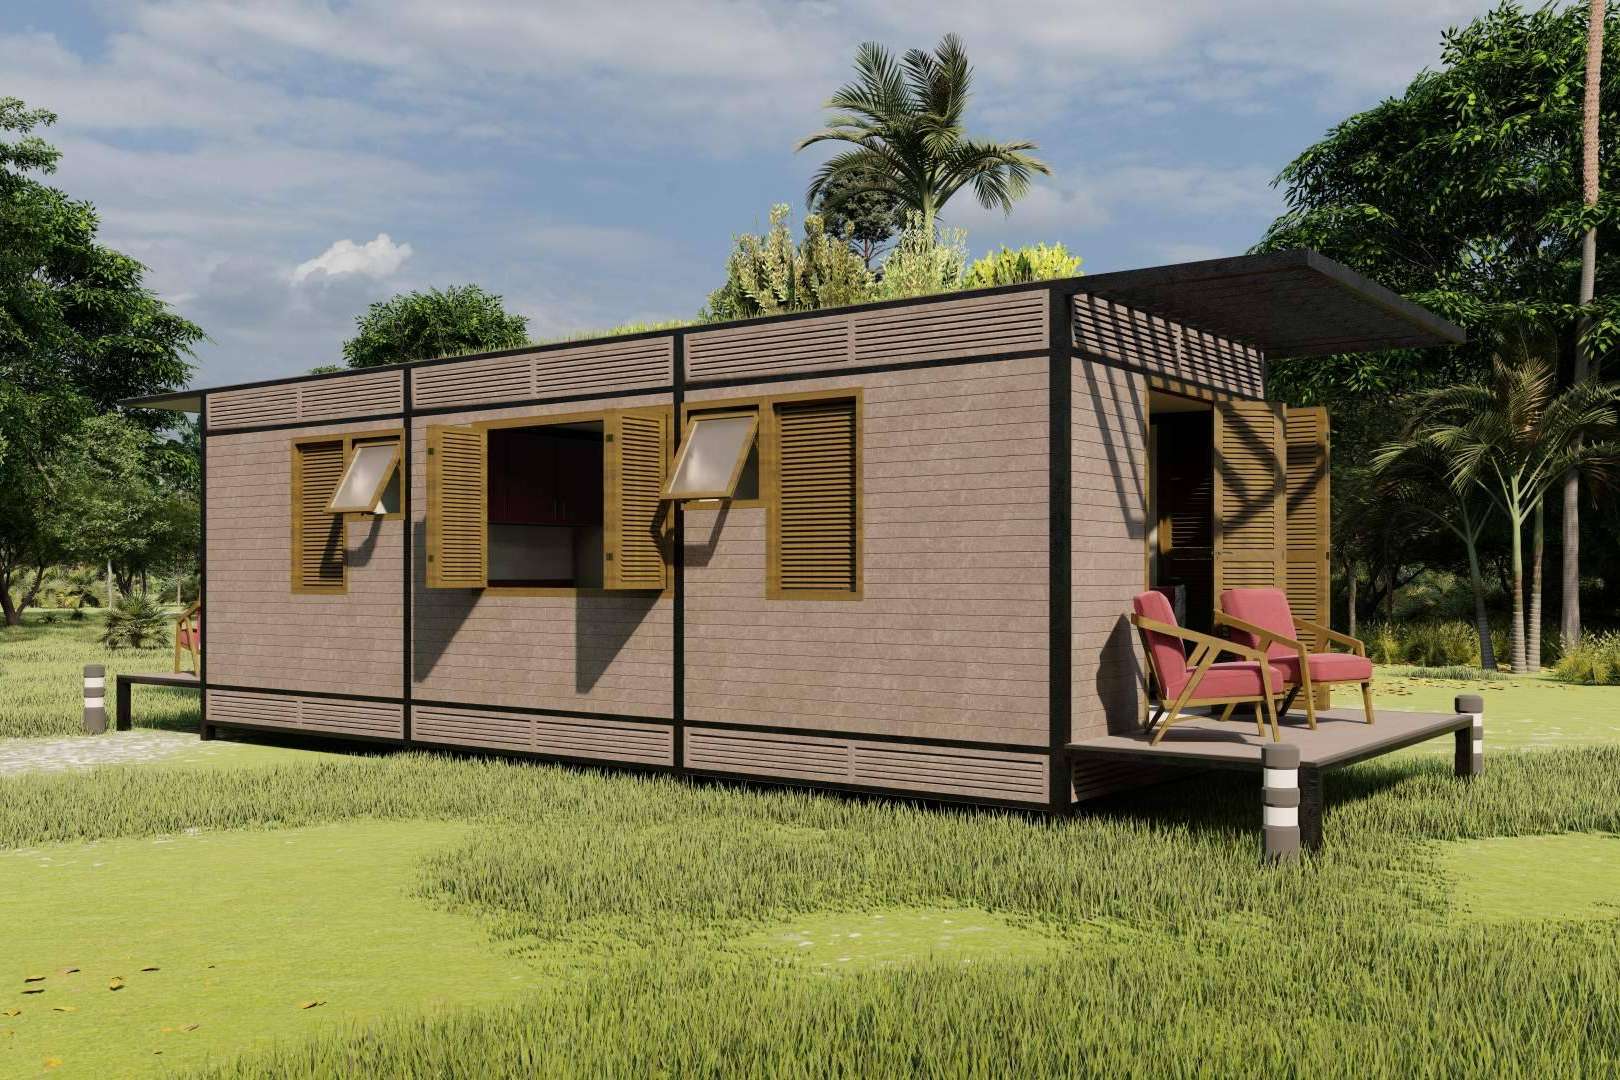 El sistema habitacional sostenible de Abadecom se consolida como la alternativa de vivienda sostenible